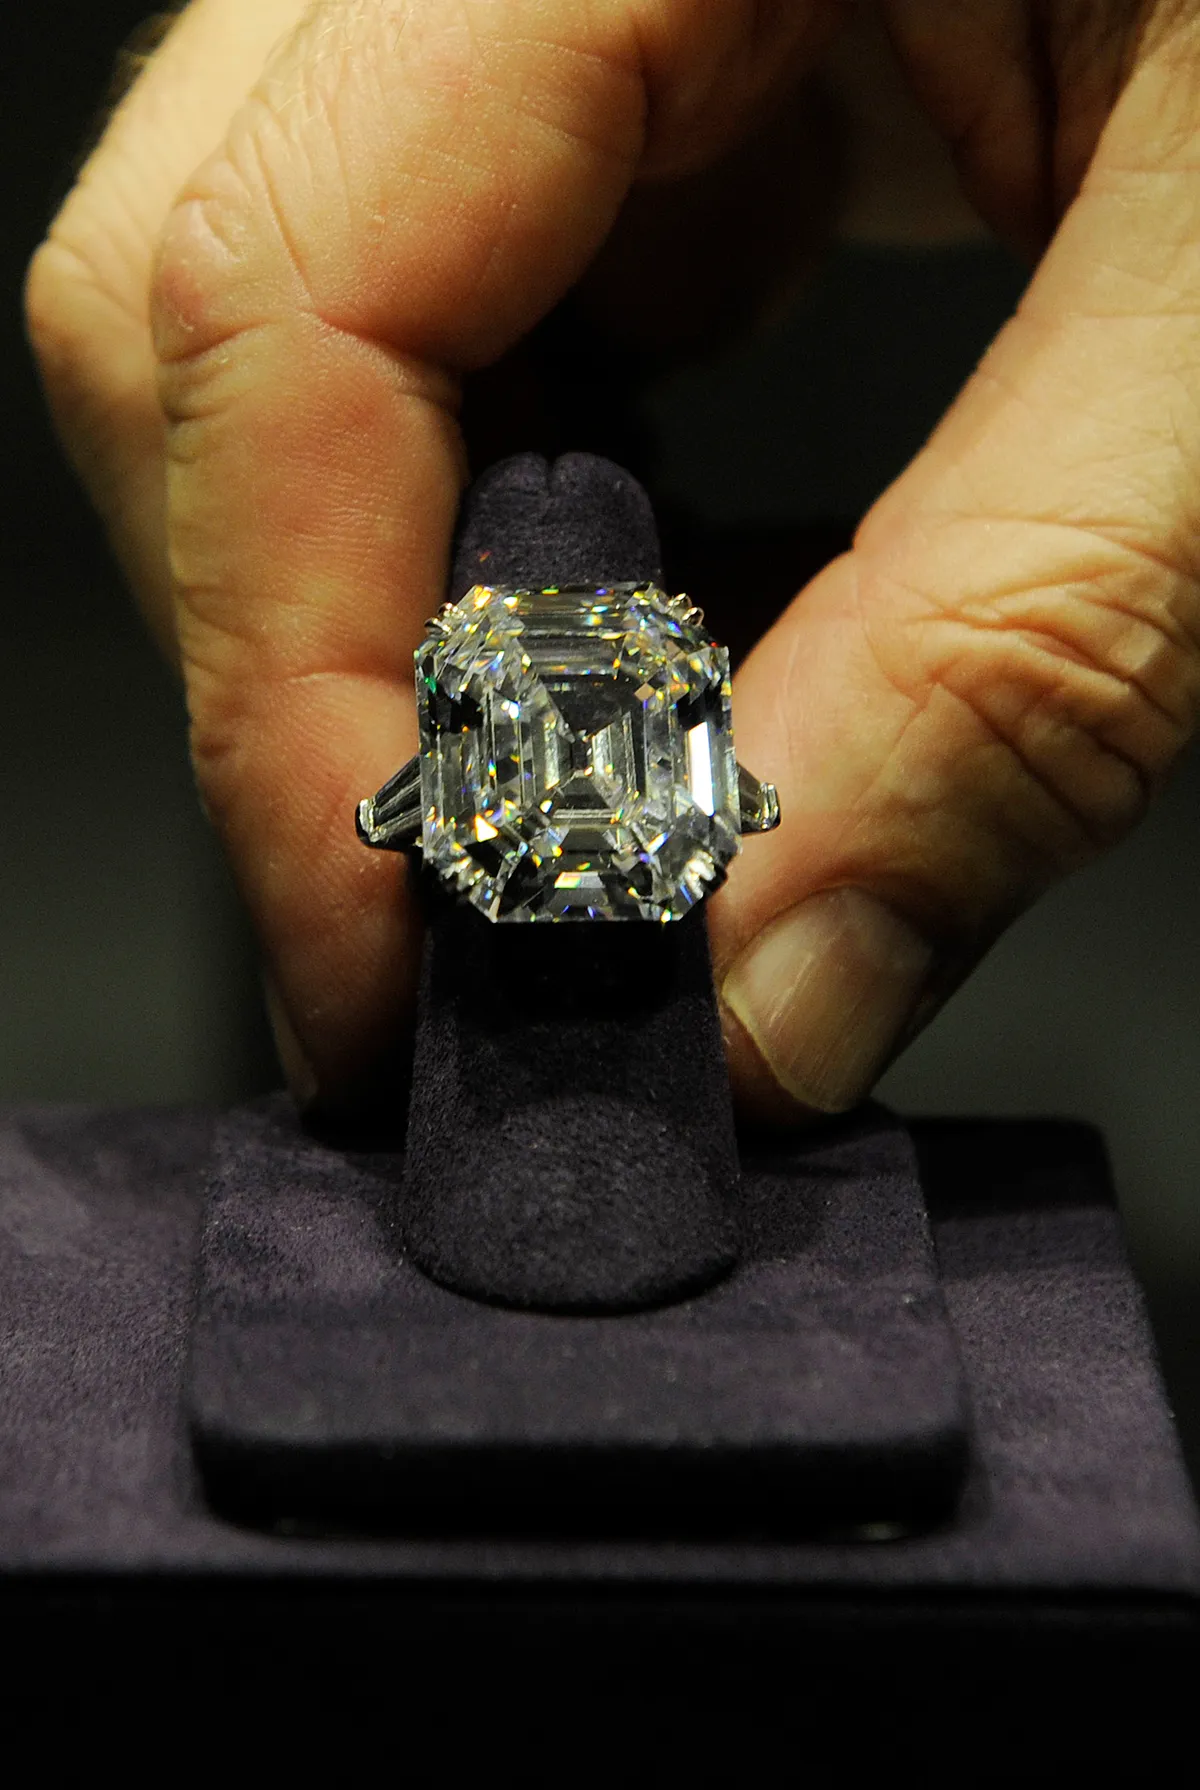 Бриллиантовое кольцо Элизабет Тейлор выставлено на аукционе Christie's в Лондоне 23 сентября 2011 года (FACUNDO ARRIZABALAGA/AFP/Getty Images)